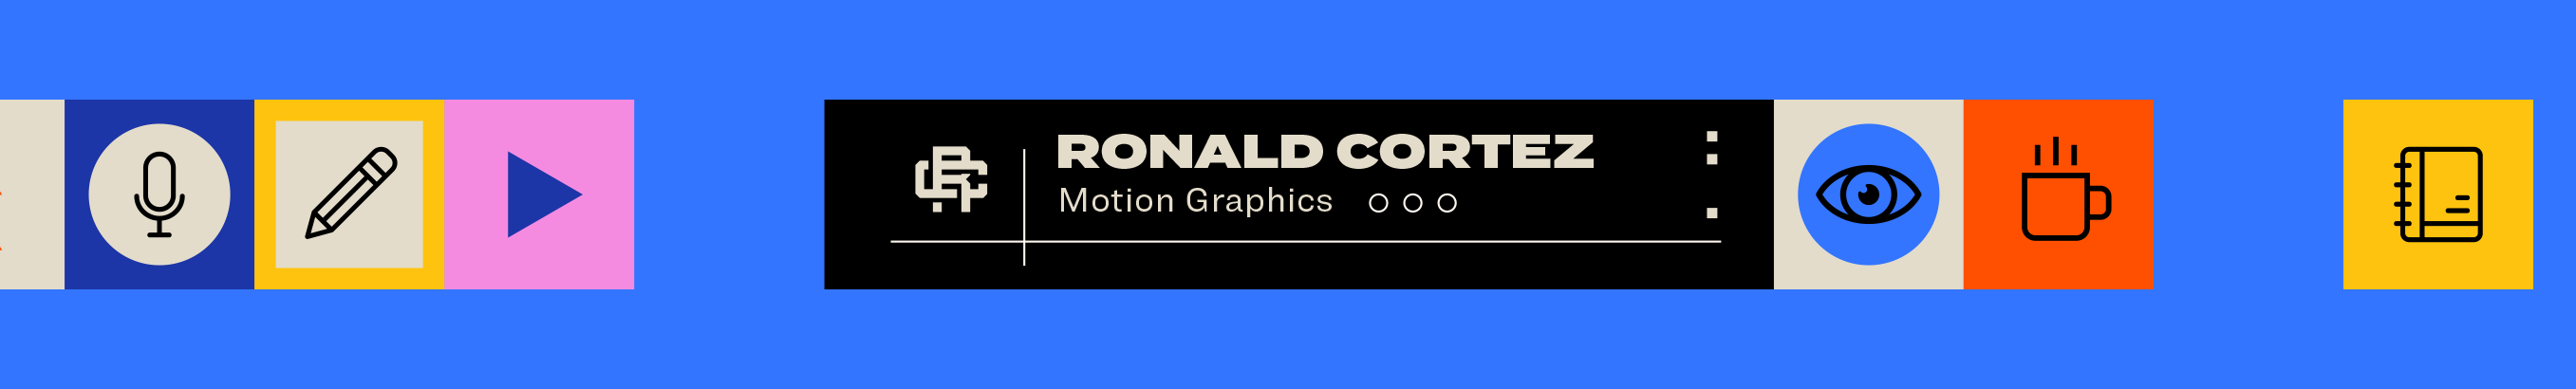 Ronald Cortez's profile banner